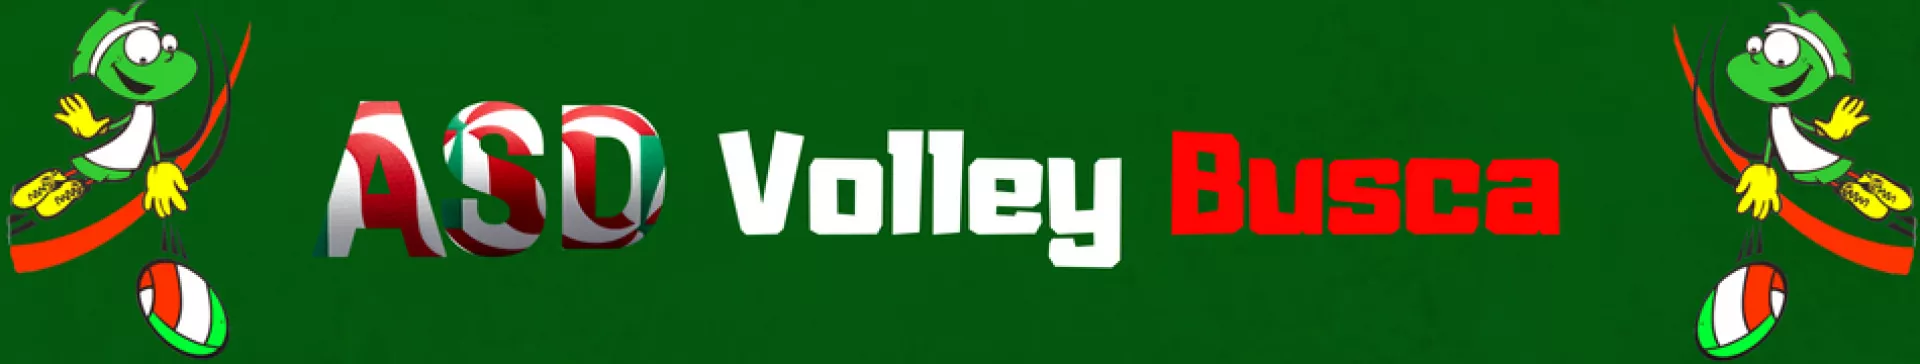 logo Volley Busca